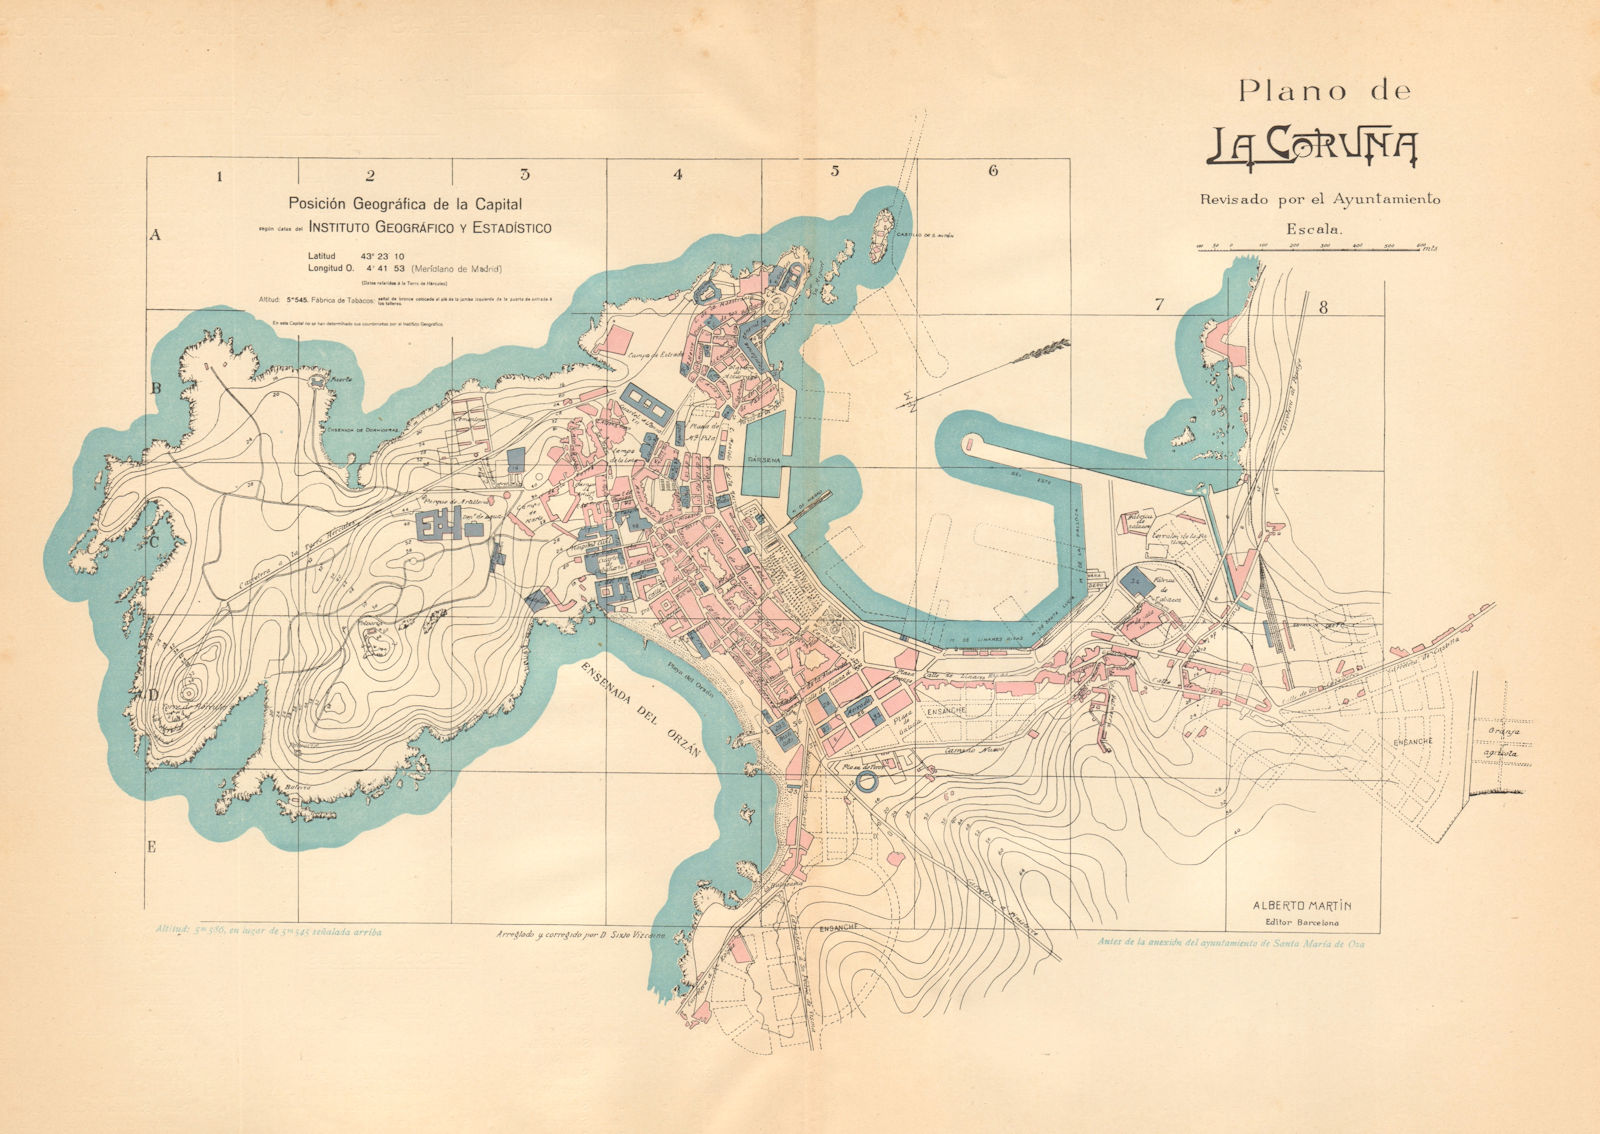 LA CORUNA. Plano antiguo de la cuidad. Antique town/city plan. MARTIN c1911 map